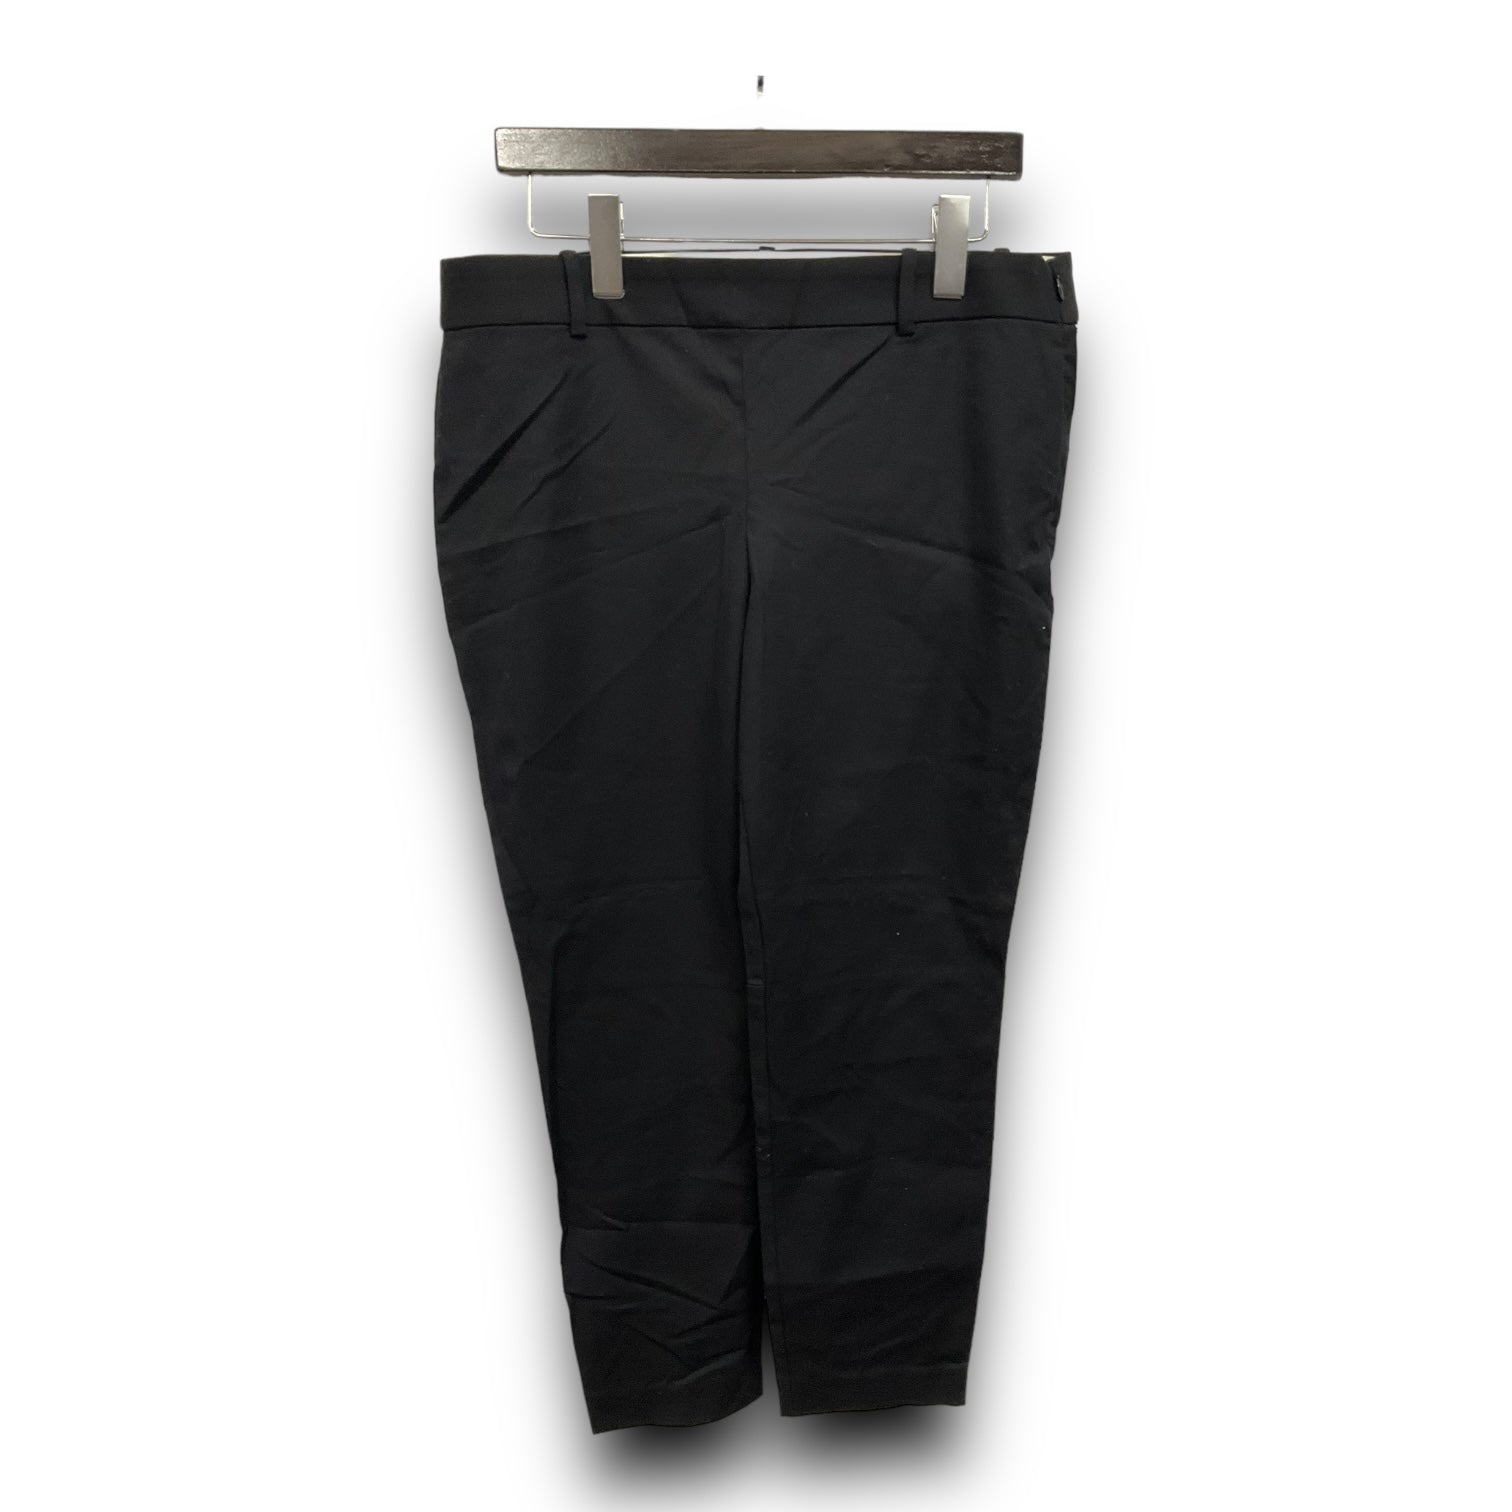 Pants Work/dress By J Crew Size: 12